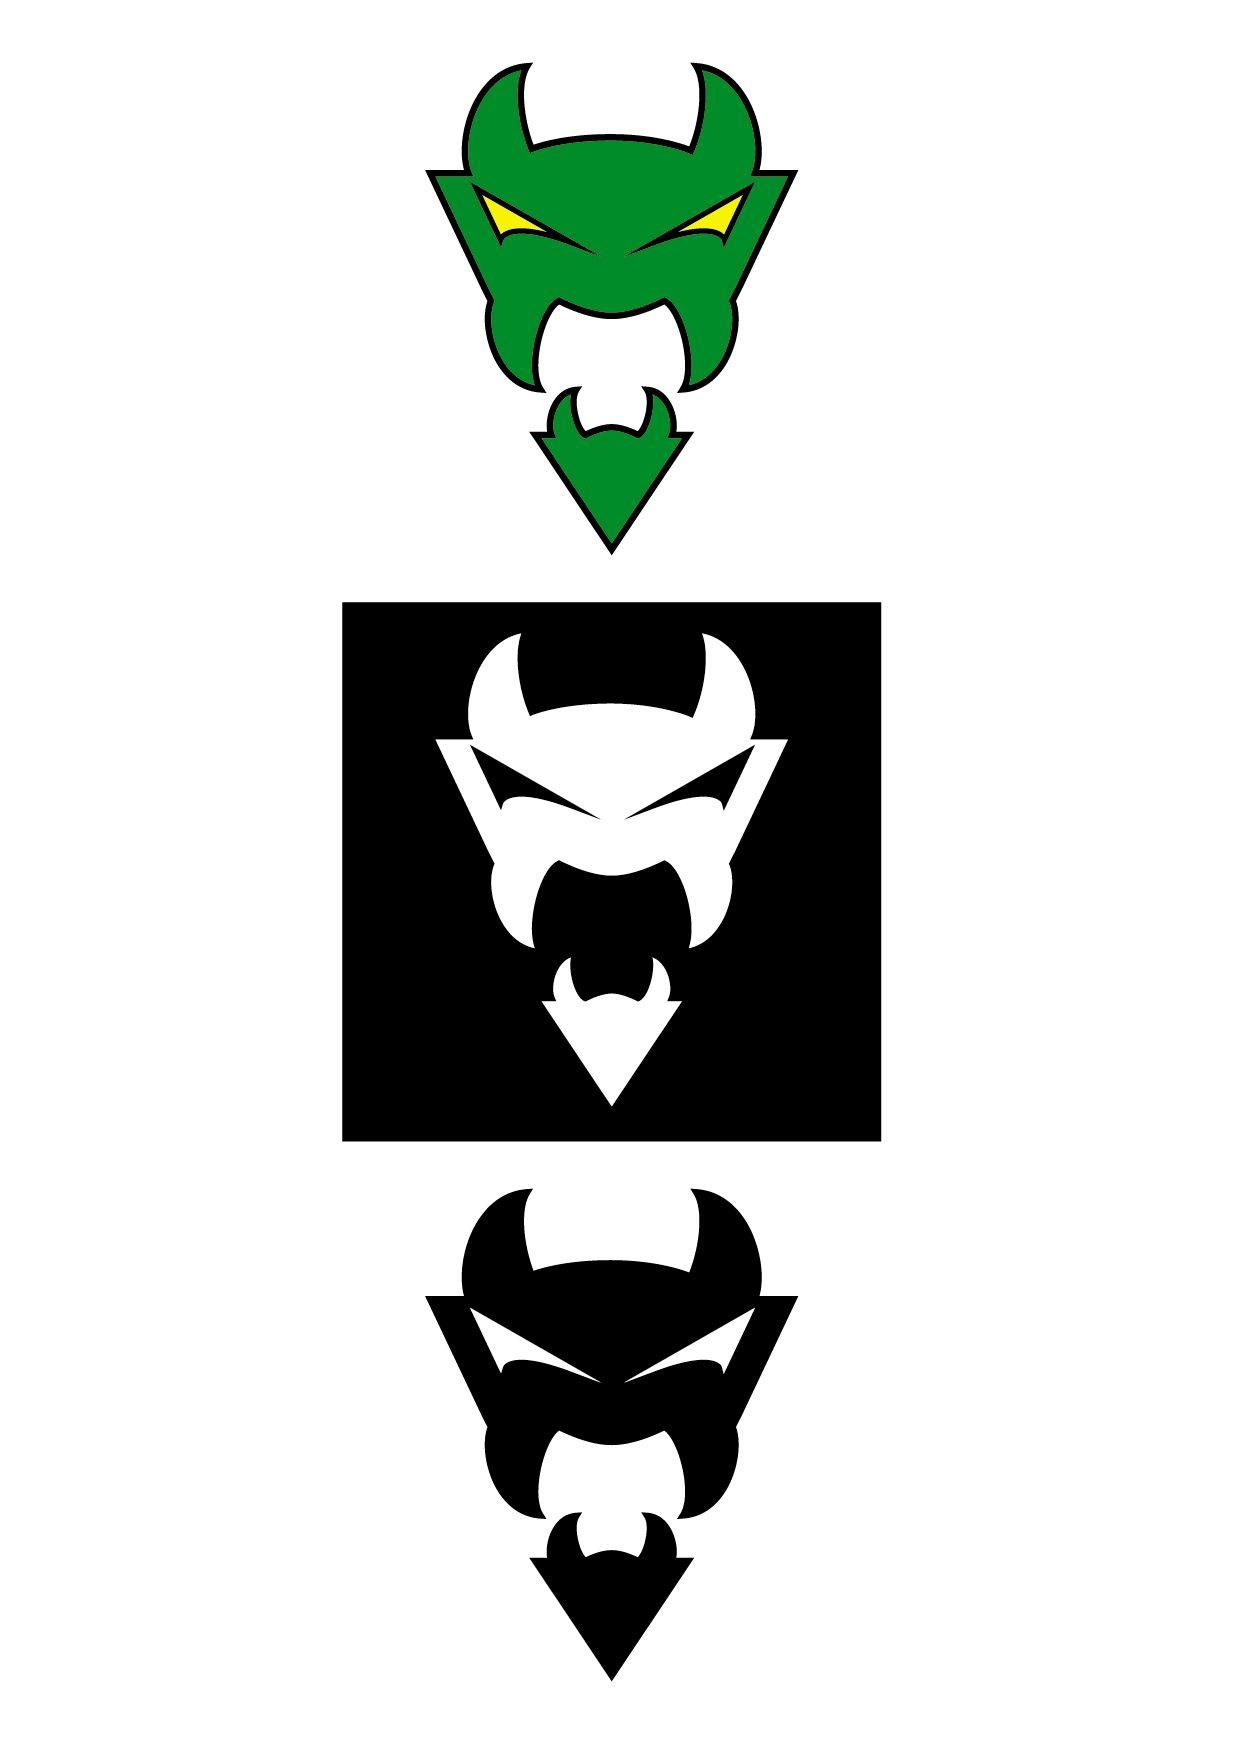 Green Devil Logo - Logo Green Devil. logo design. Logo design, Logos, Design